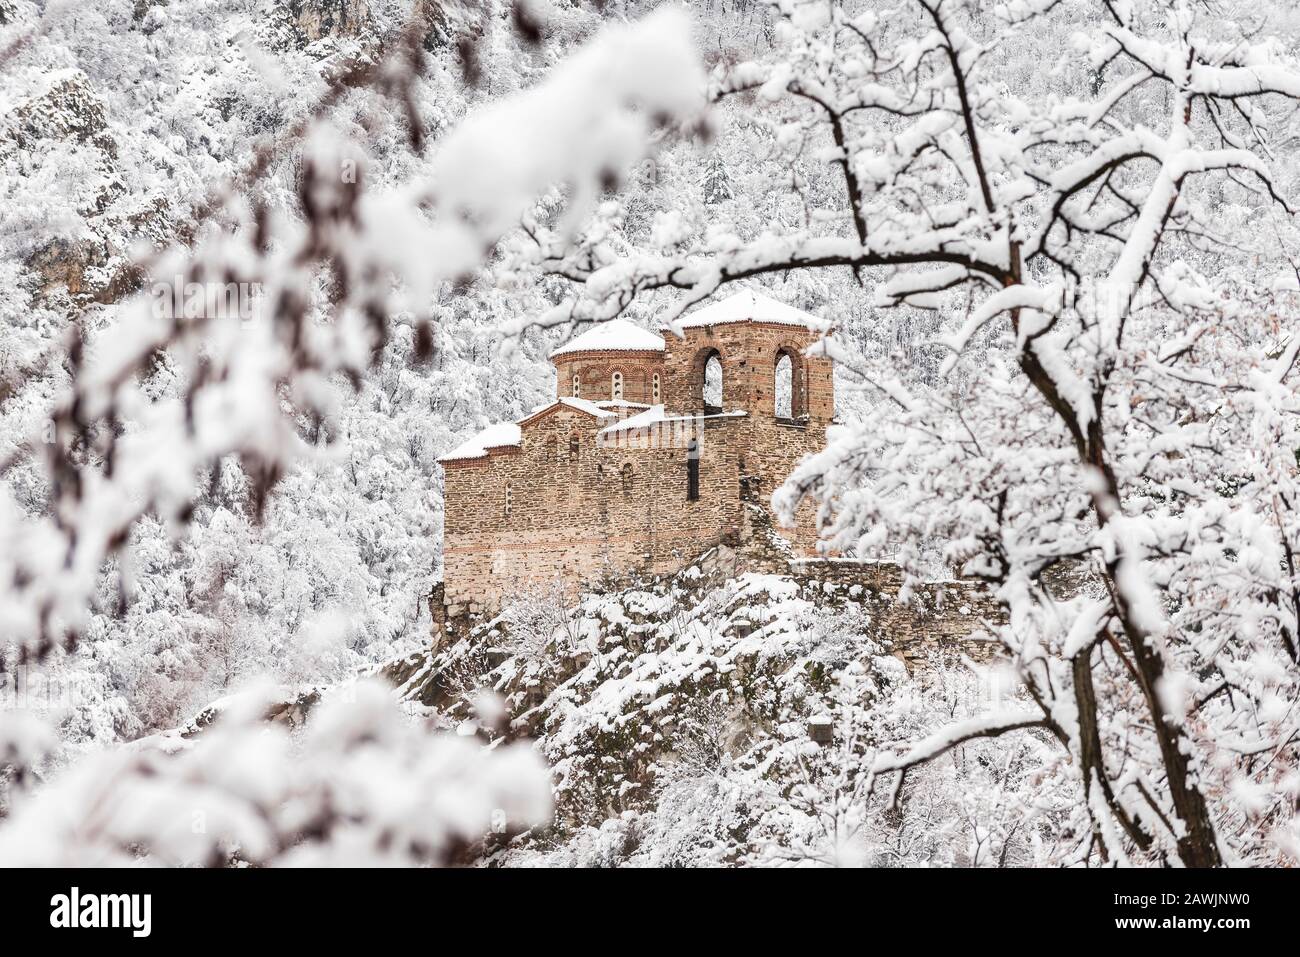 Forteresse d'Asen, Bulgarie - Paysage d'hiver de l'église fortifiée de la Vierge Marie, la Sainte mère de Dieu) près de la ville d'Asenovgrad Banque D'Images